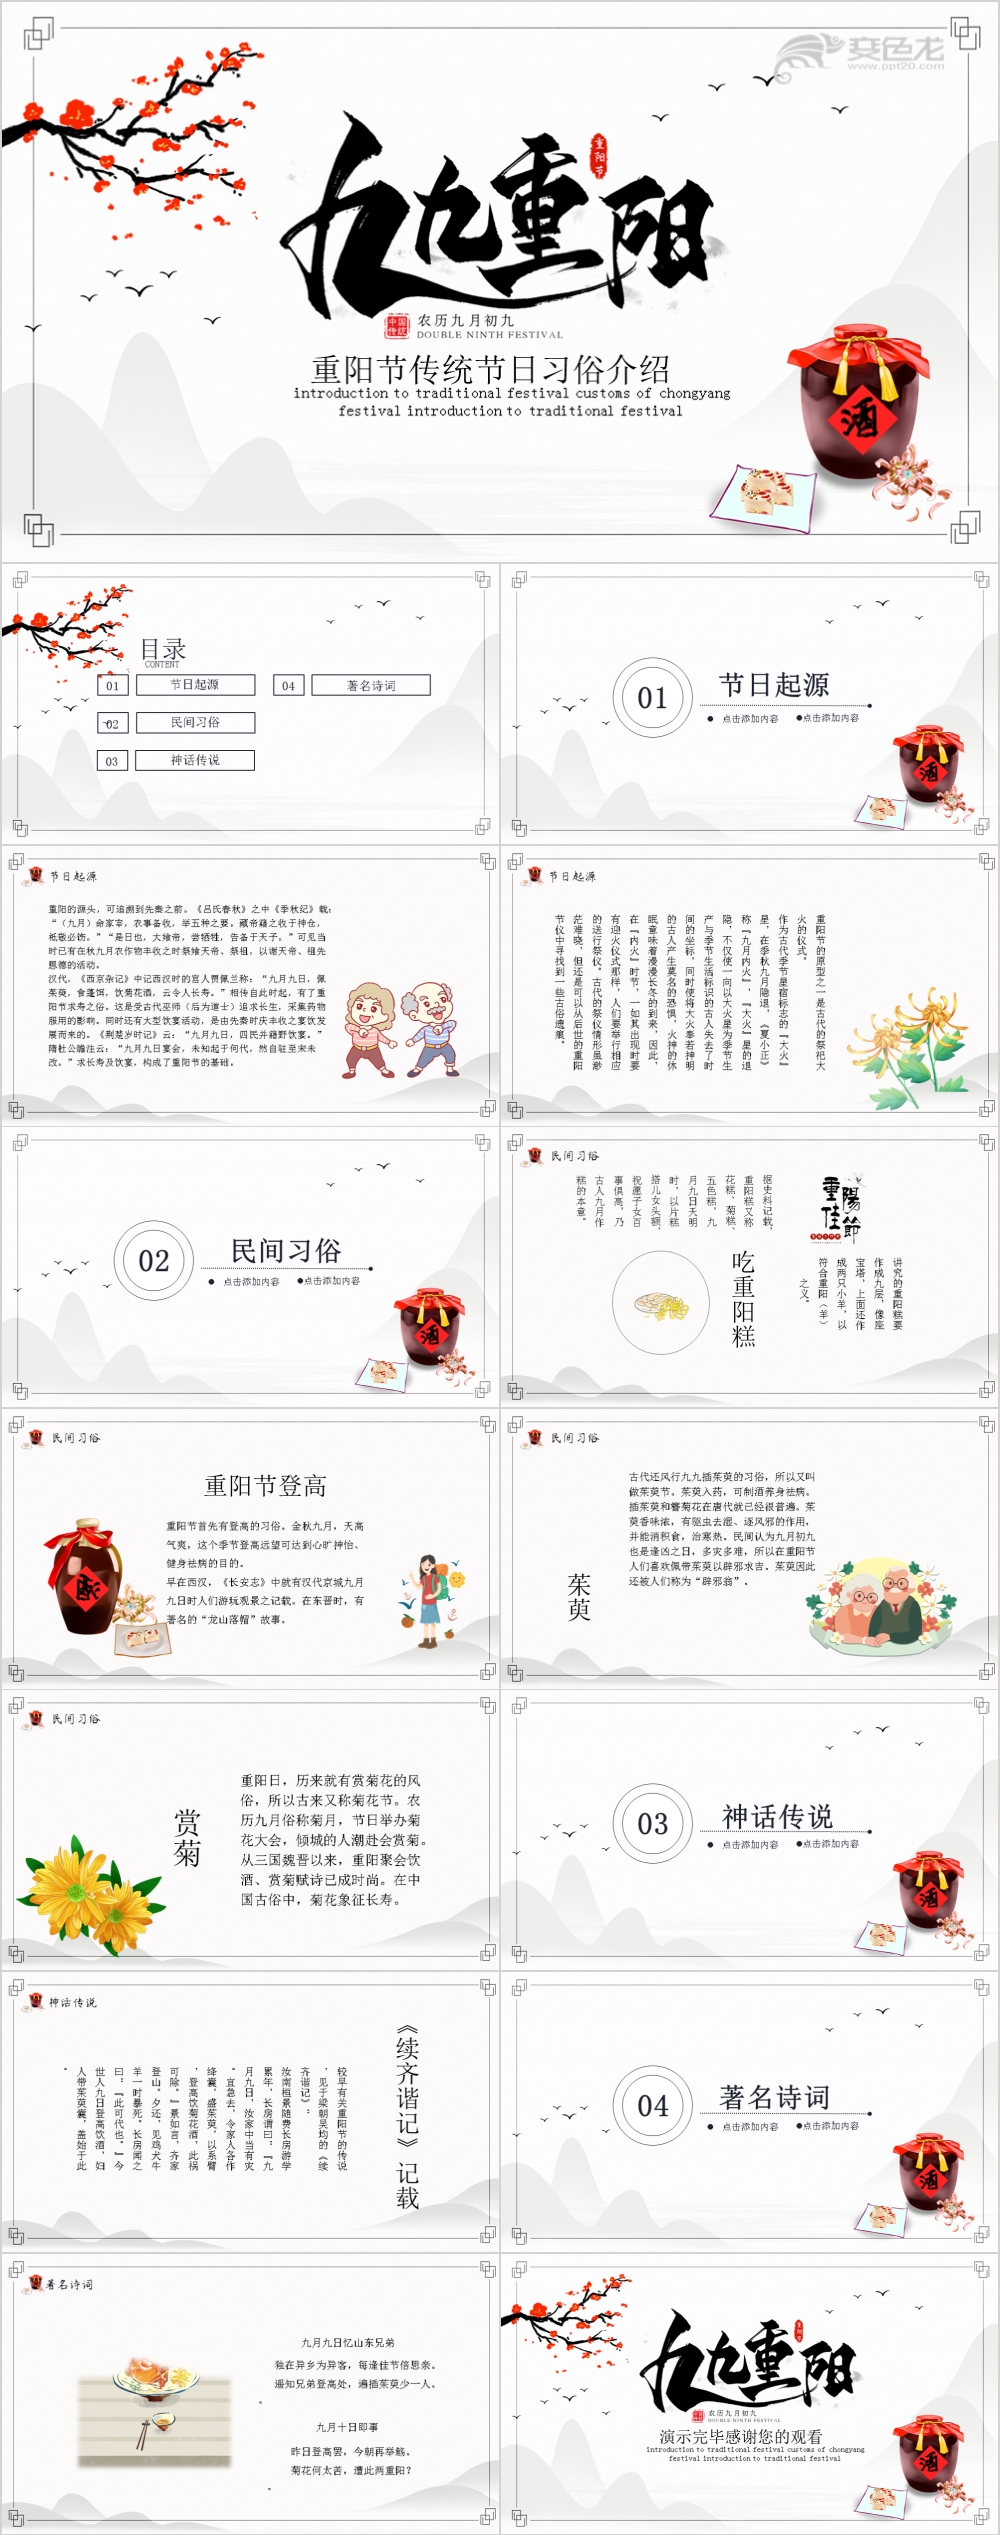 大气中国风重阳节传统节日习俗介绍PPT模板